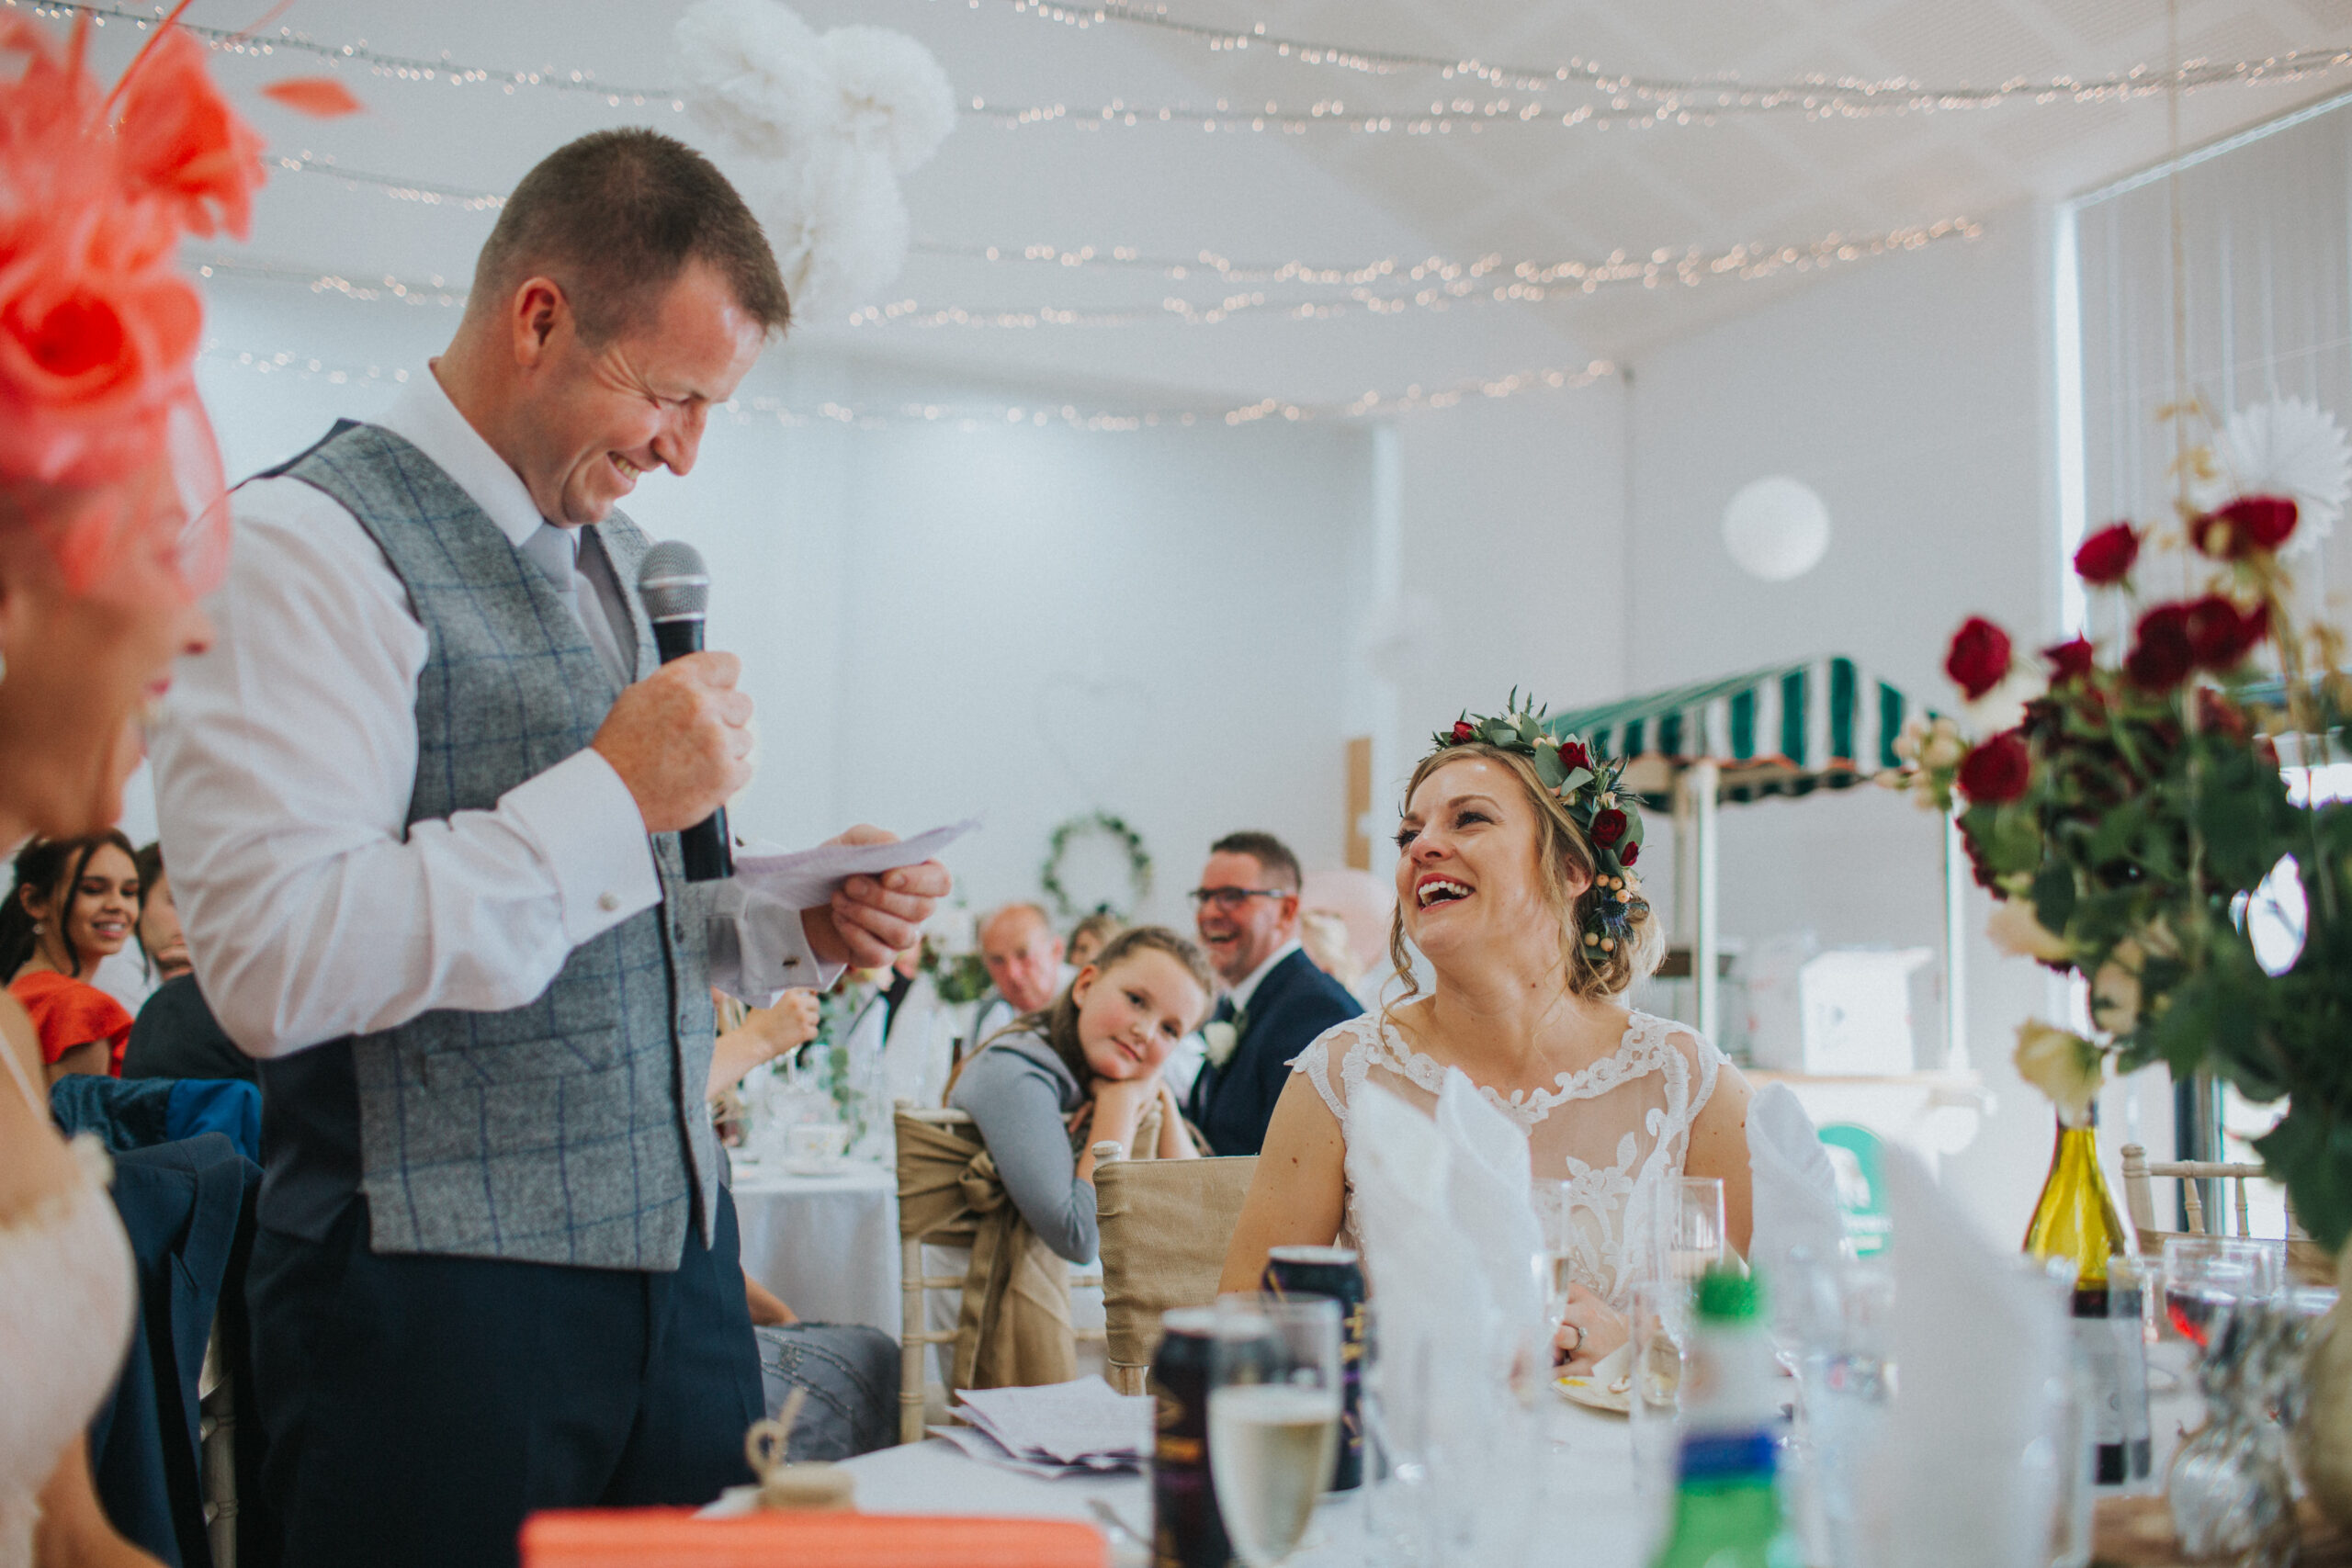 bride emotional over groom's speech